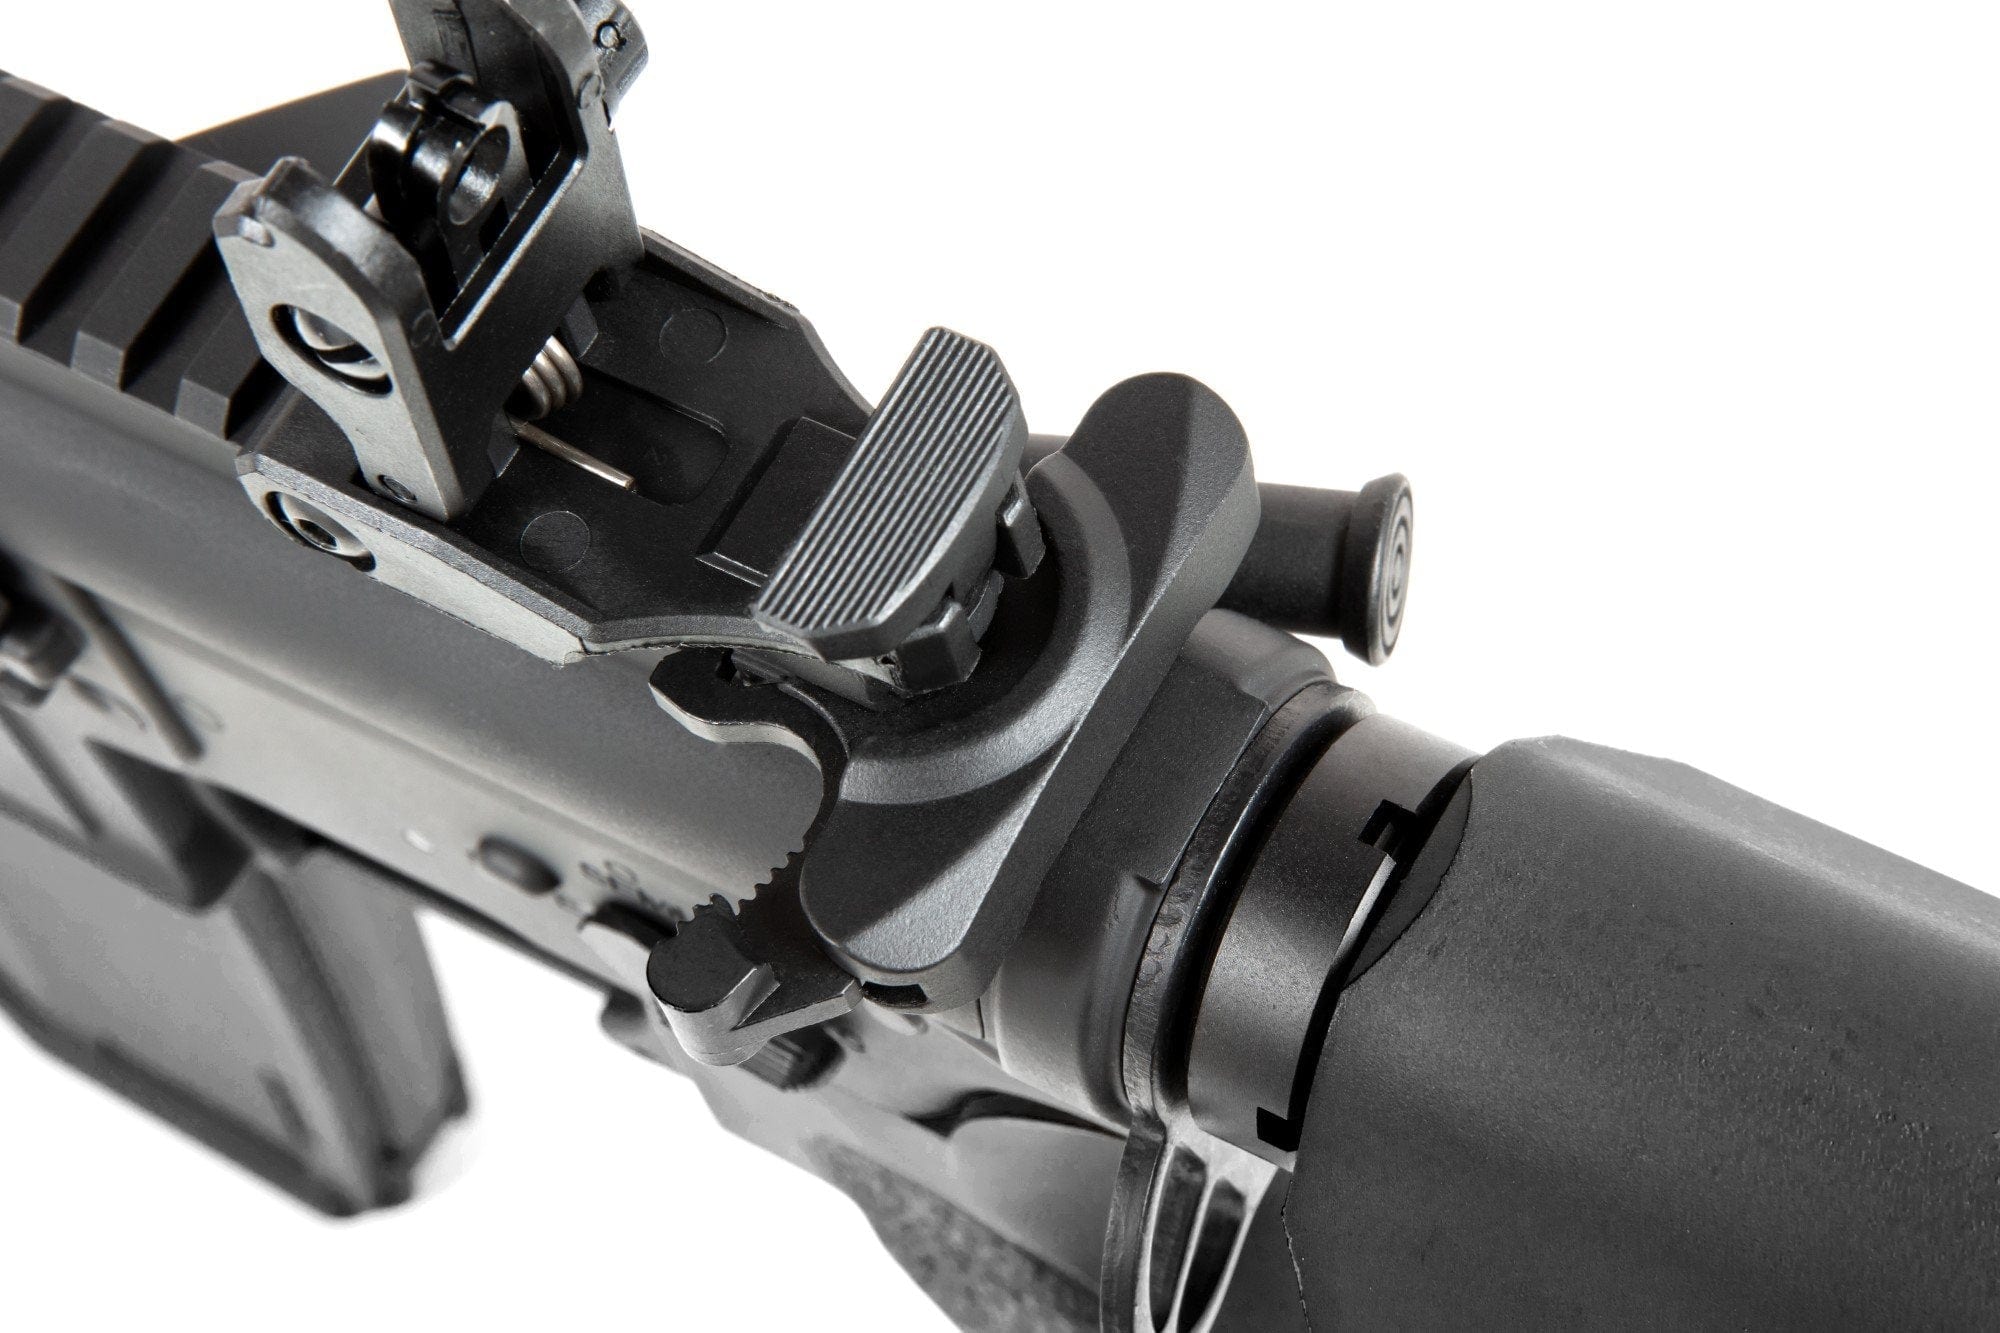 RRA SA-E05 EDGE™ Carbine Replica by Specna Arms on Airsoft Mania Europe